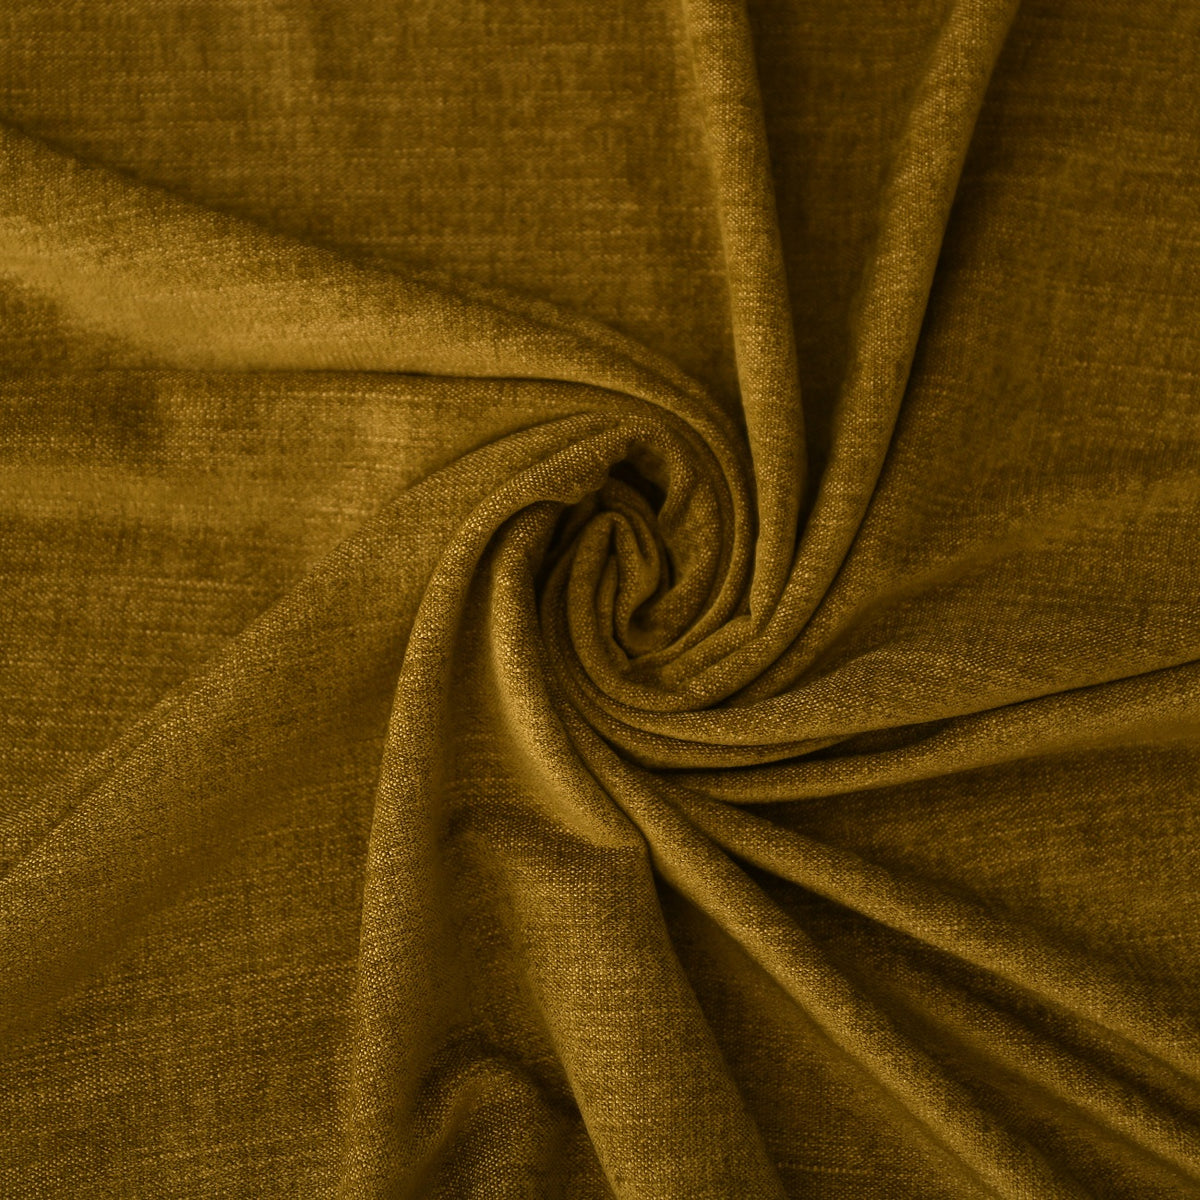 Night curtain mustard yellow Yeti